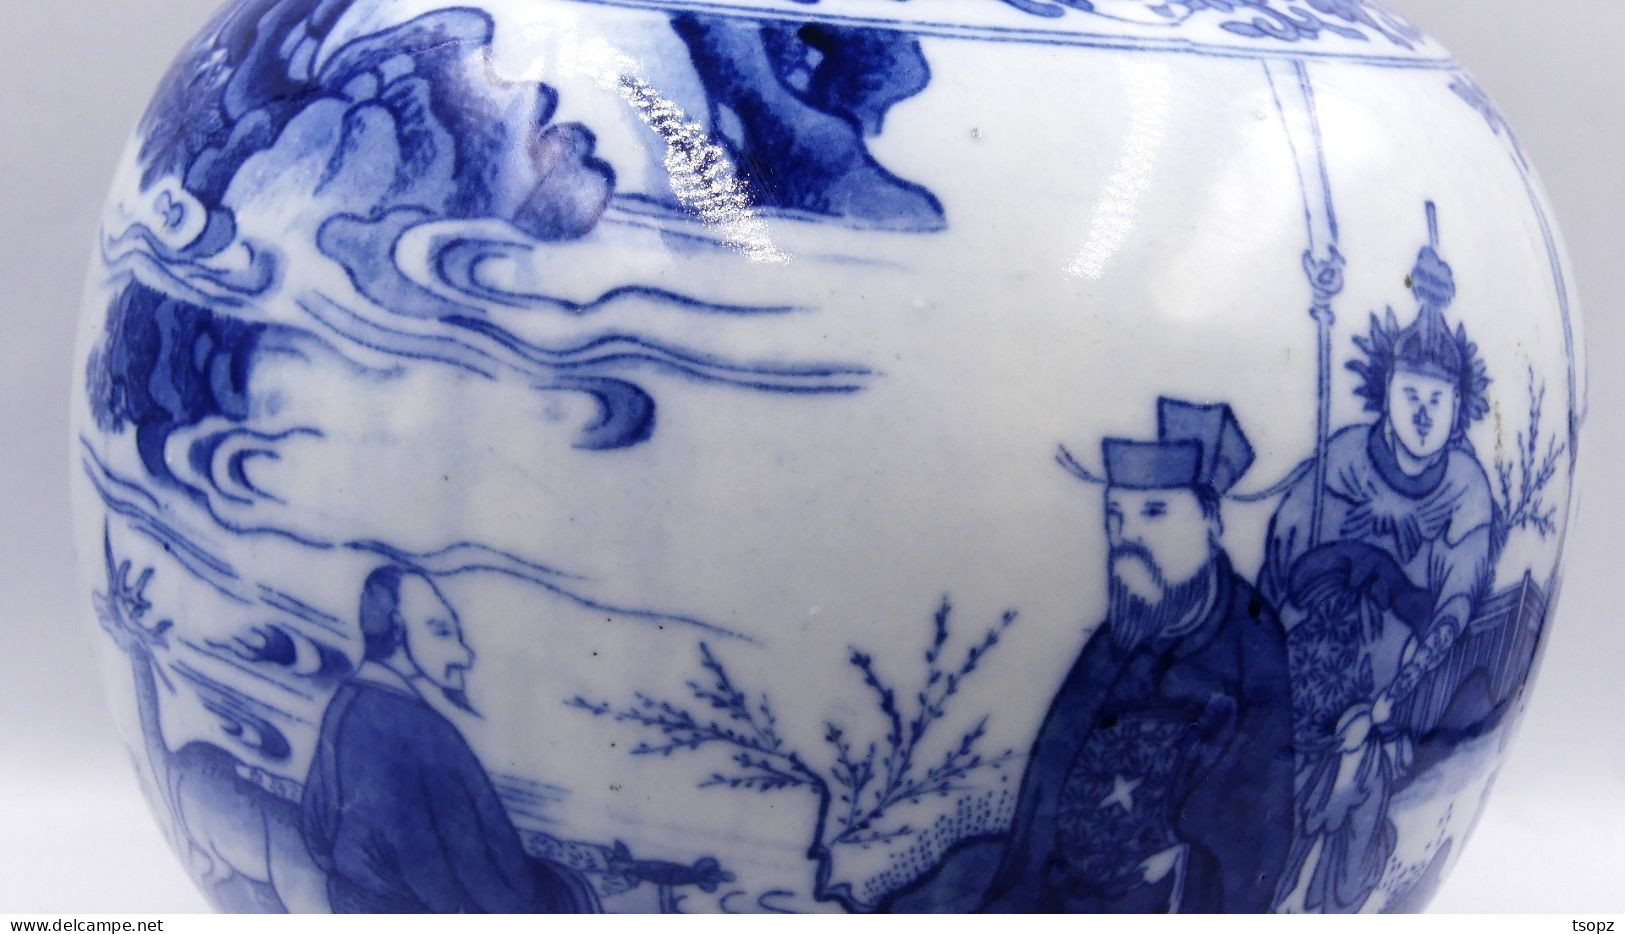 Chine Vase balustre de la Période Republique à décor de paysages